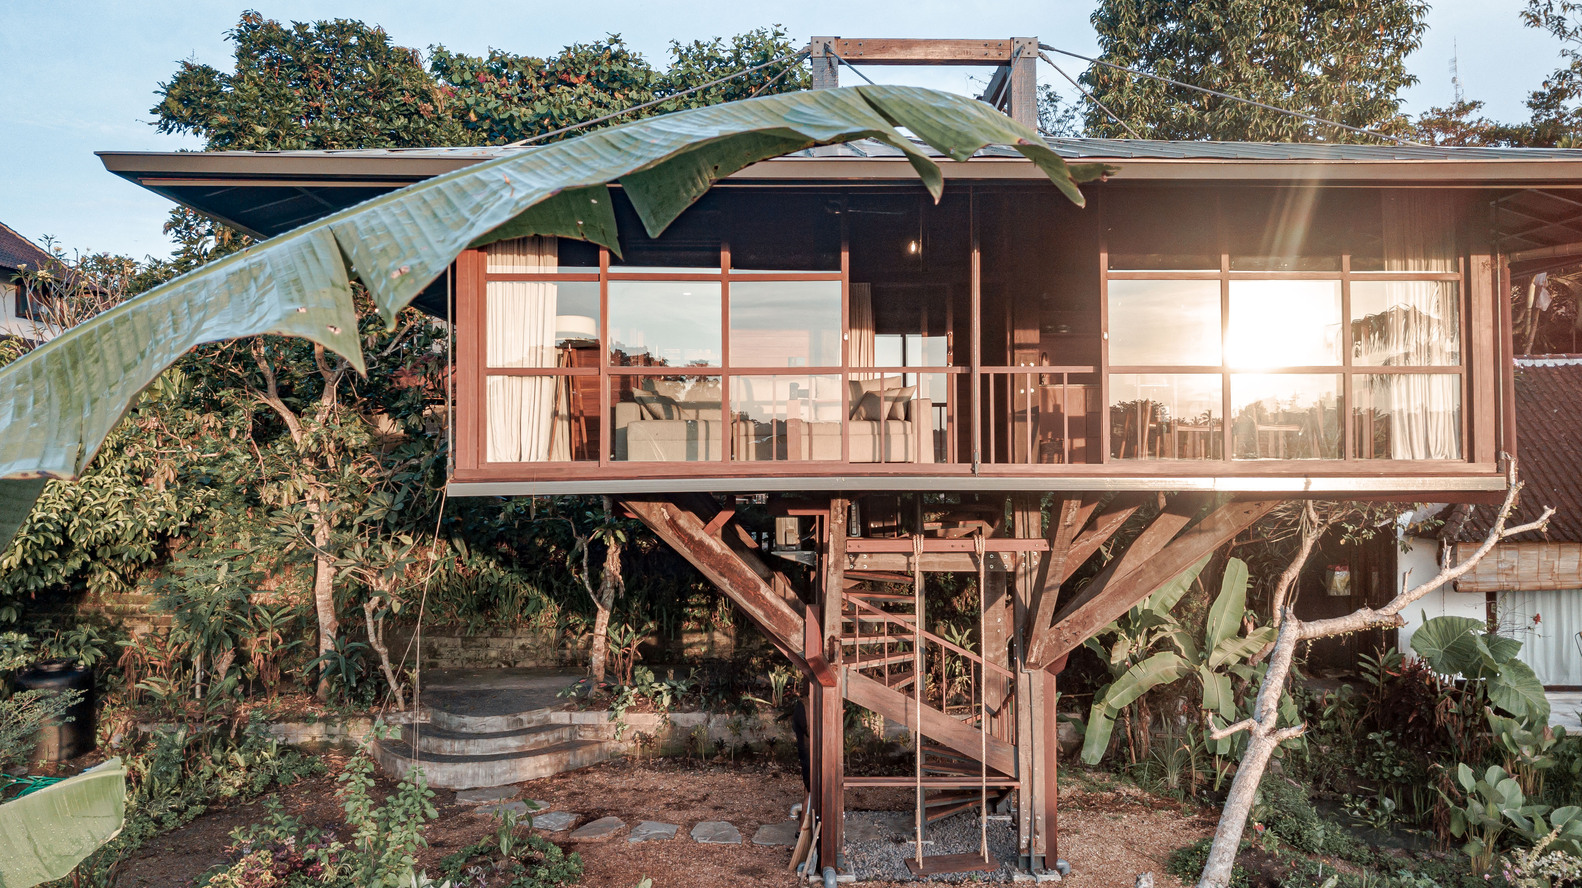 Ngôi nhà gỗ hình cái cây độc đáo ở Bali, nằm lọt thỏm giữa khu vườn nhiệt đới đầy bình yên - Ảnh 1.